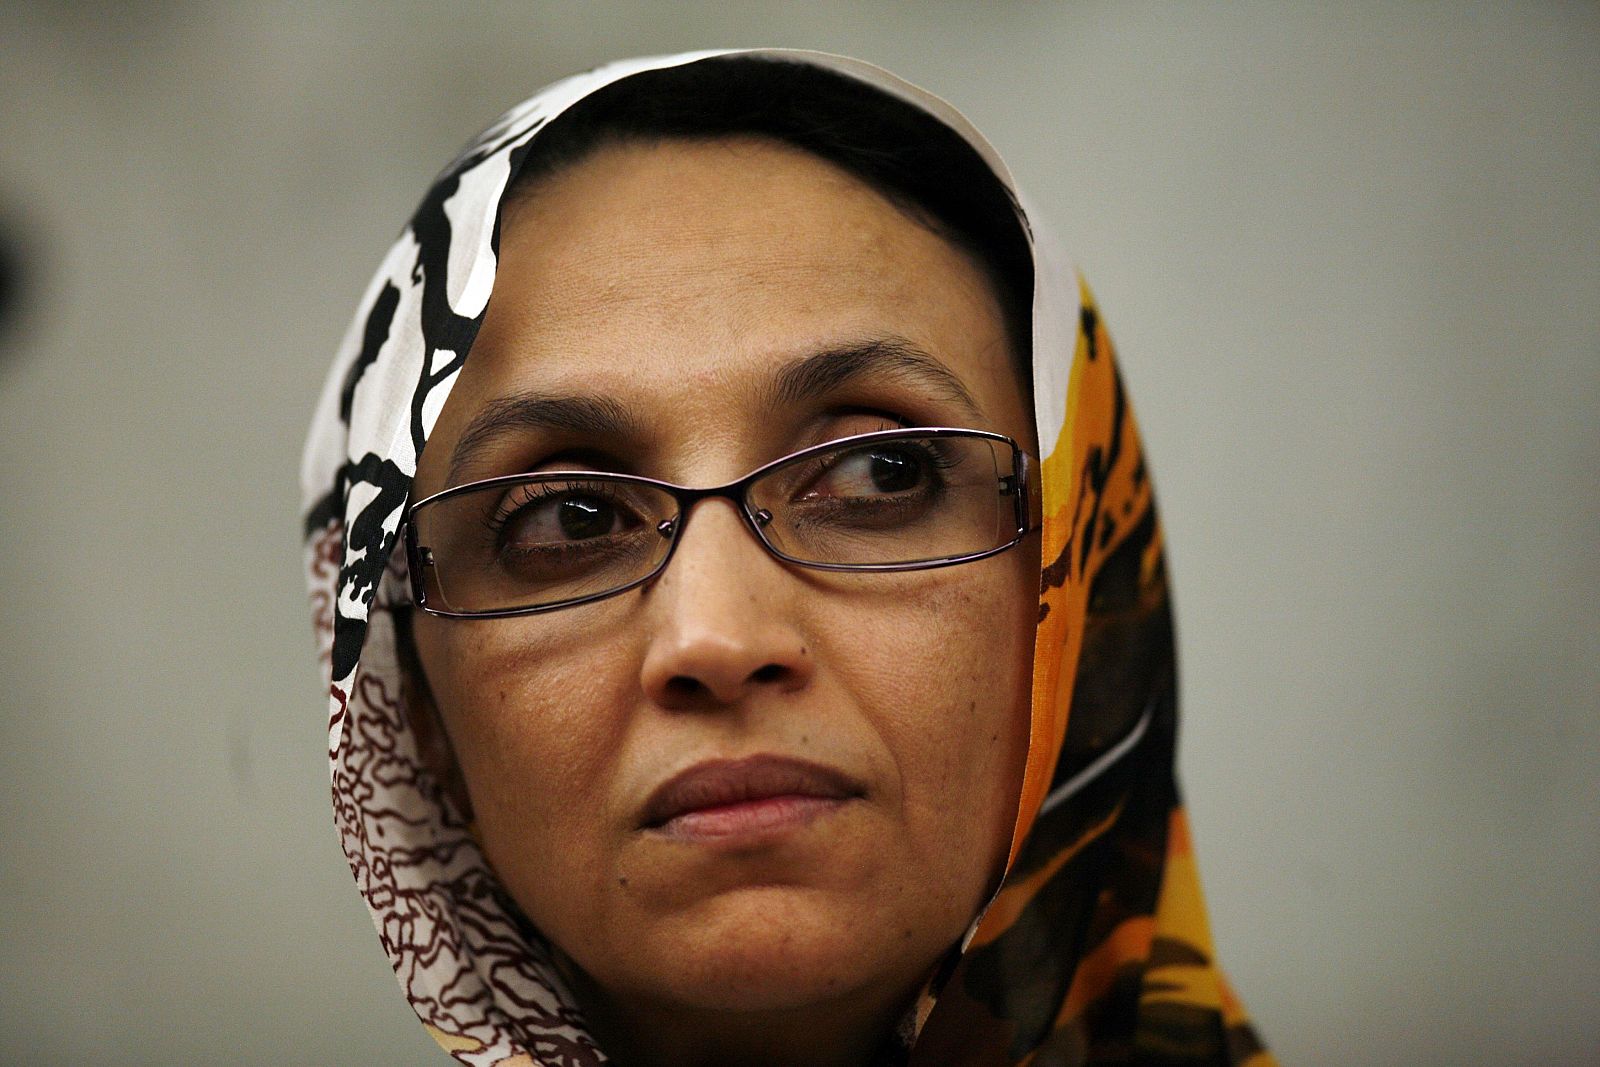 La activista saharaui Aminatu Haidar quiere estar al lado de su pueblo "que sufre la represión de Marruecos".